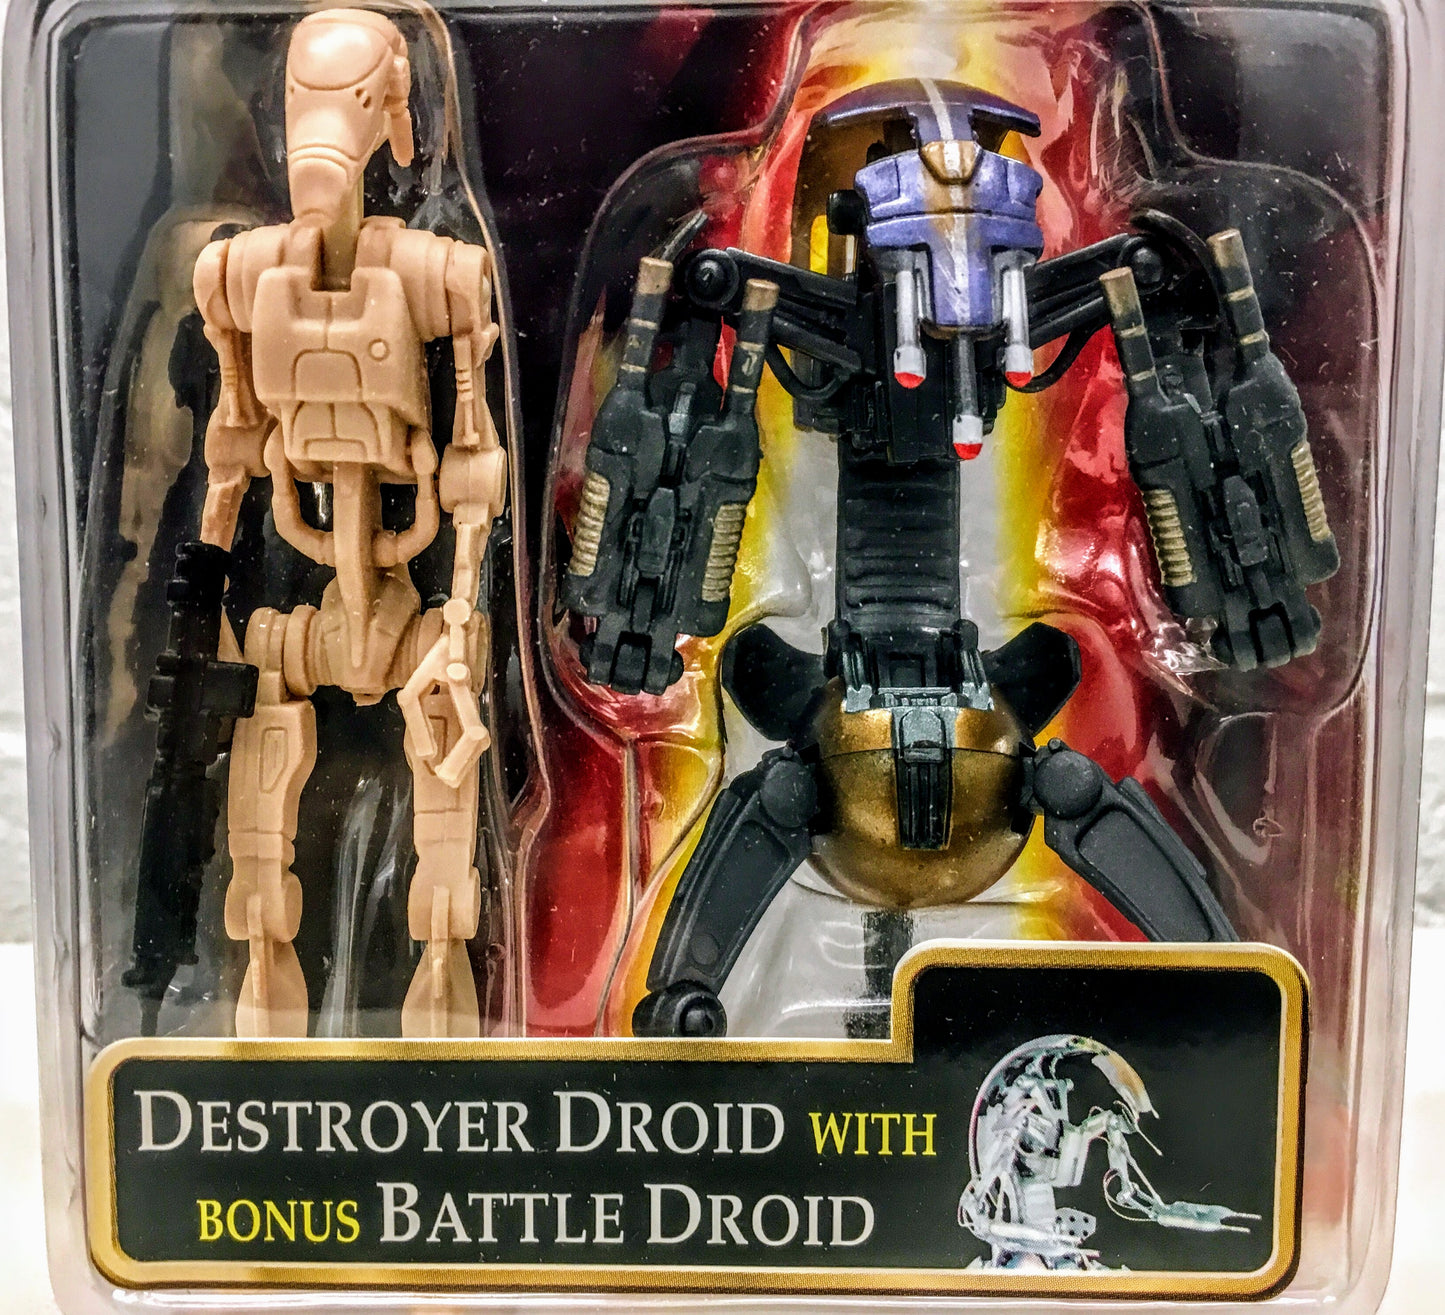 Destroyer Droid with bonus Battle Droid